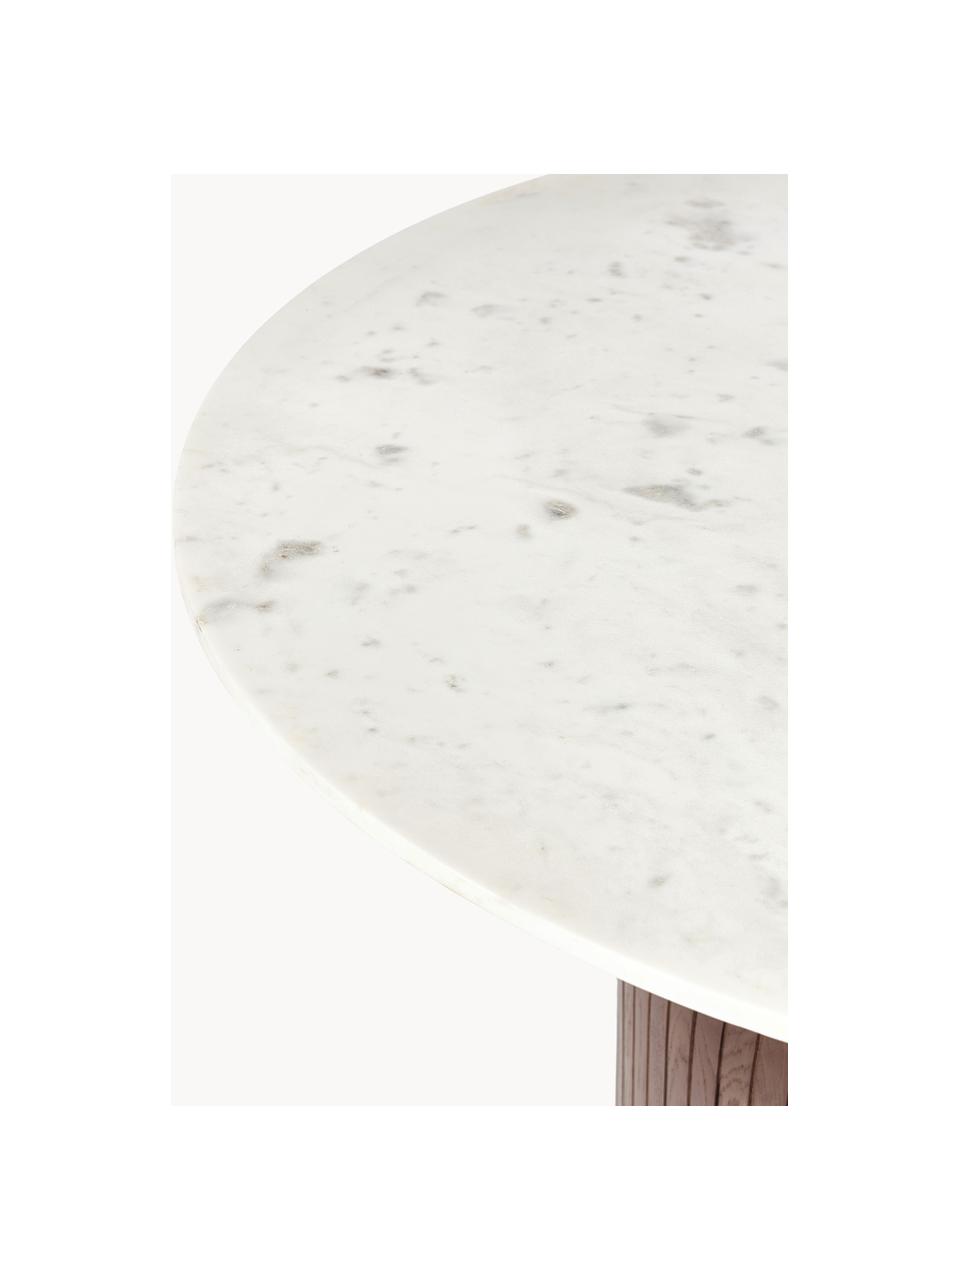 Runder Esstisch Nelly mit Marmor-Tischplatte, Ø 115 cm, Tischplatte: Marmor, Weiß marmoriert, dunkles Eichenholz, Ø 115 cm